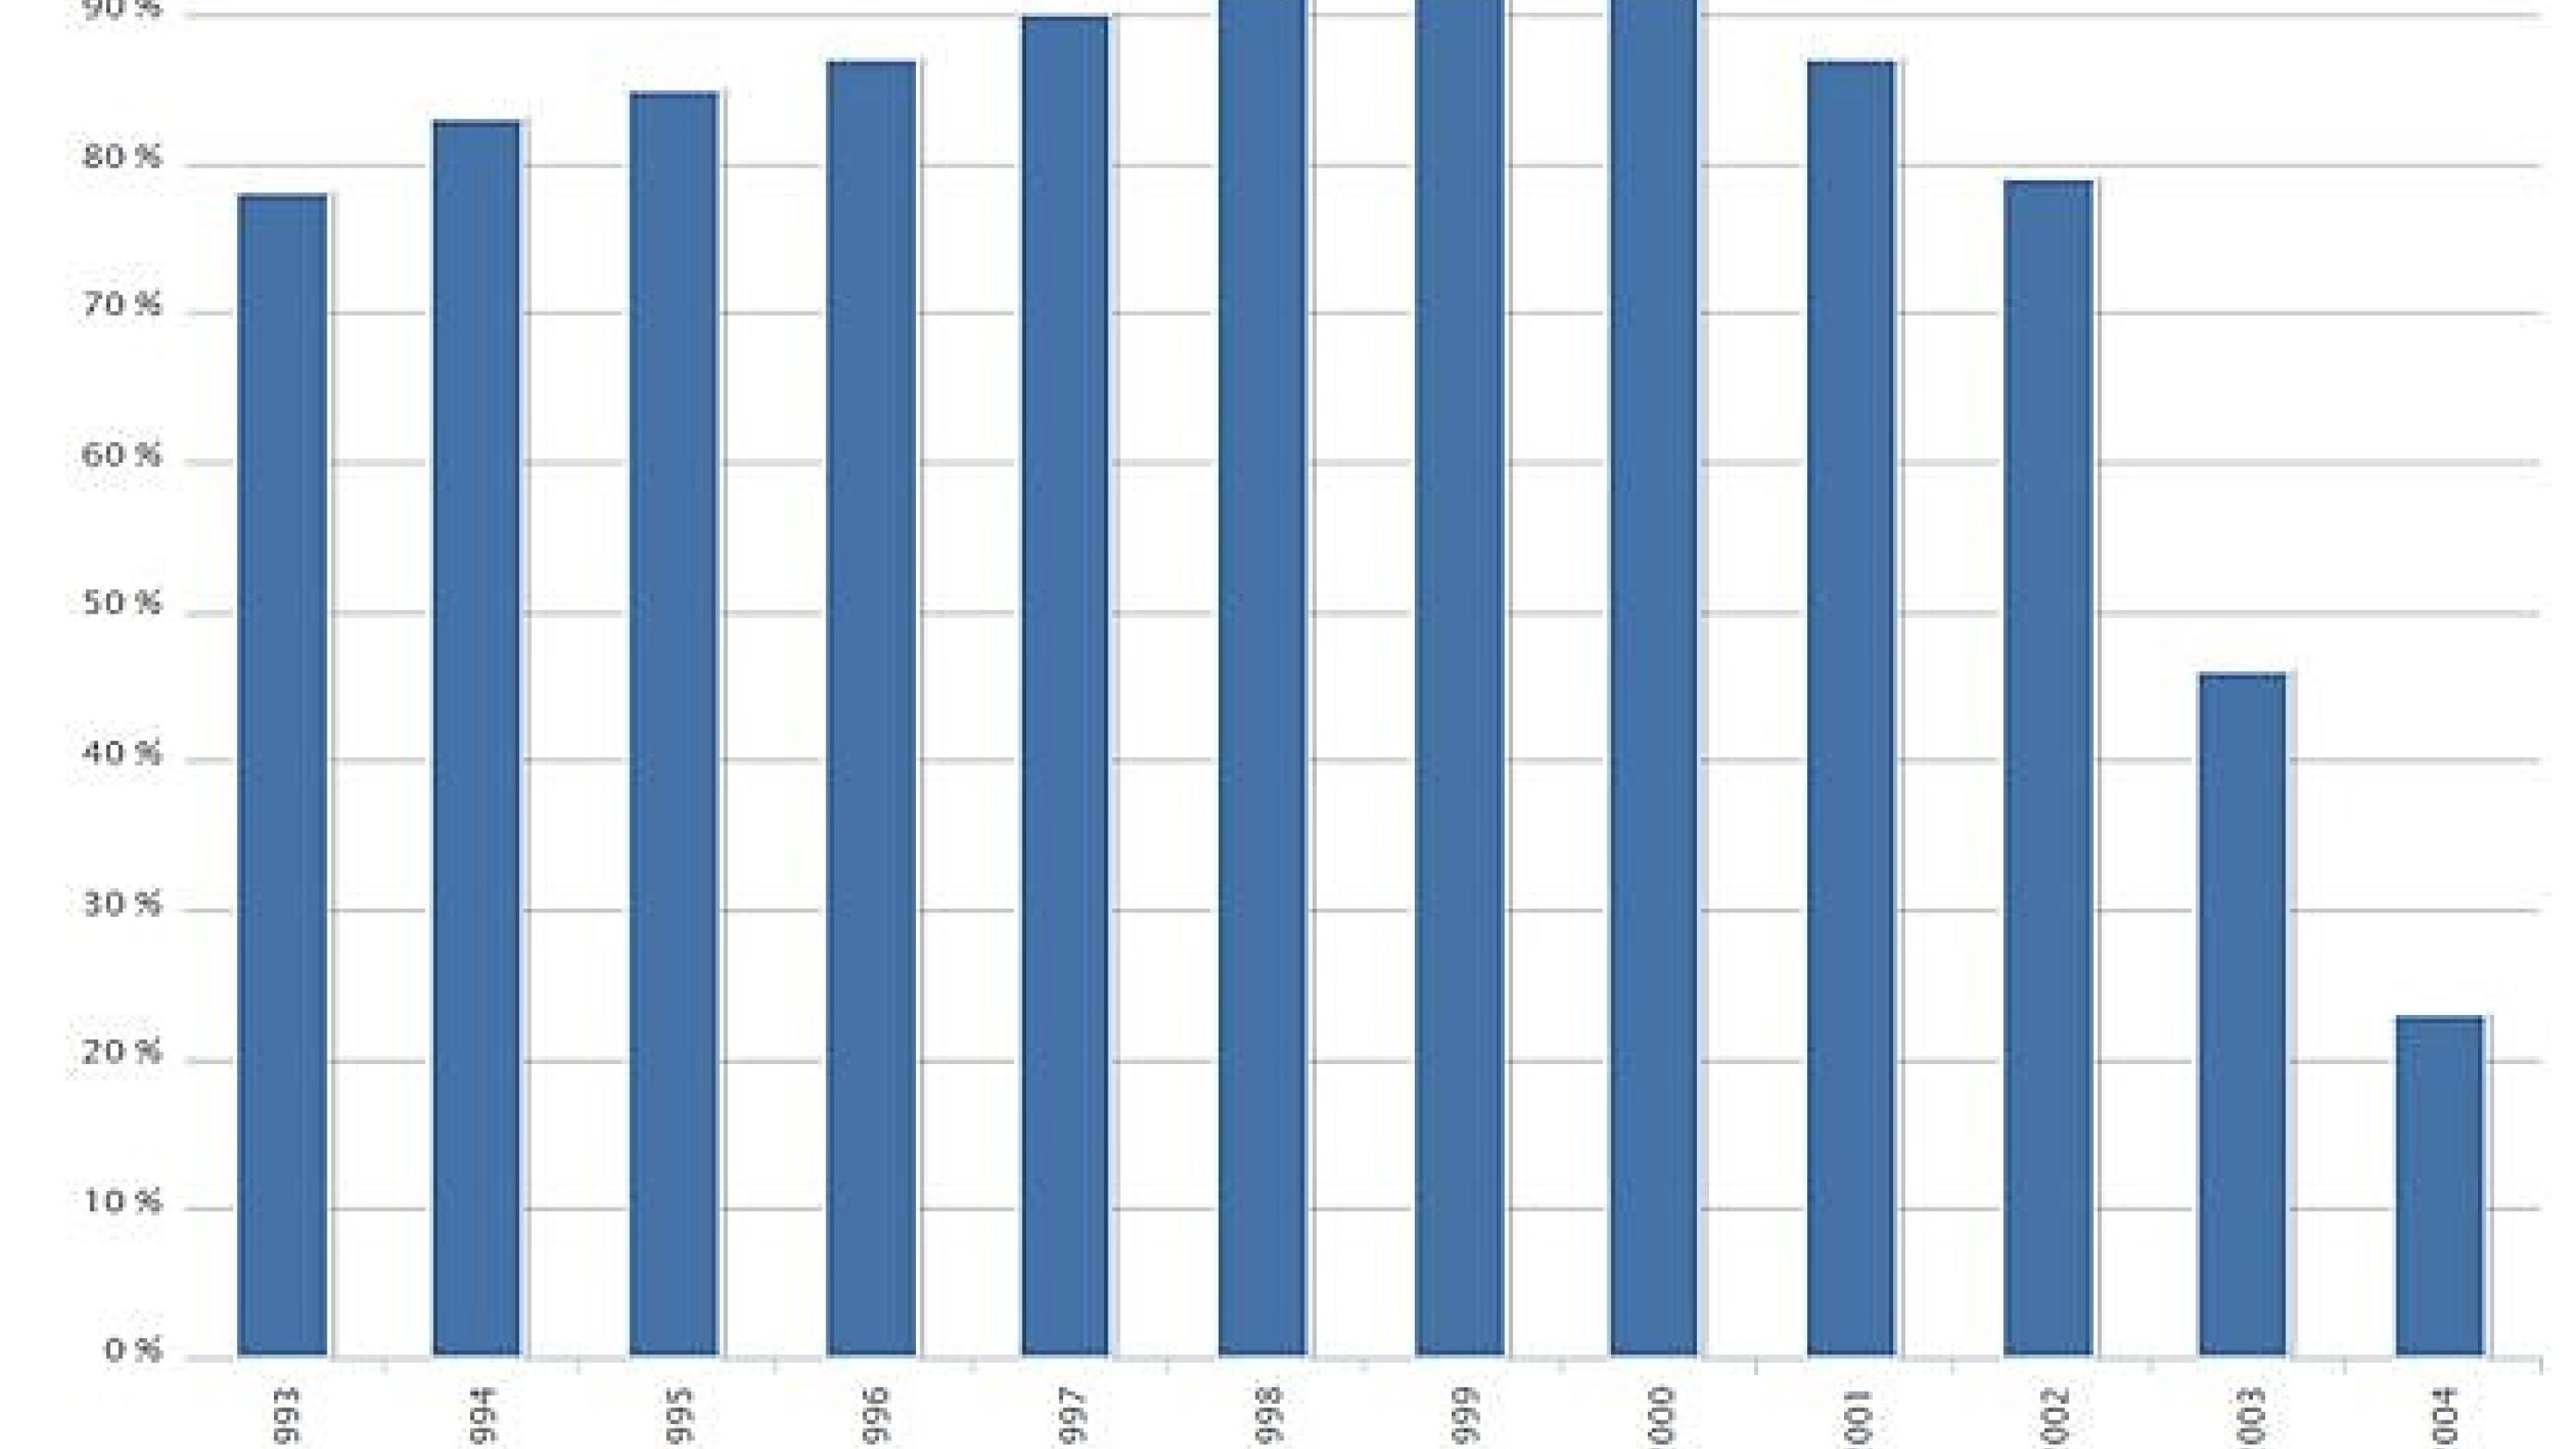 Andel af kvinder vaccineret med Human papillomavirus (HPV) 1, Fødselsår: 1993-2004.
Kilde: Statens Serum Institut